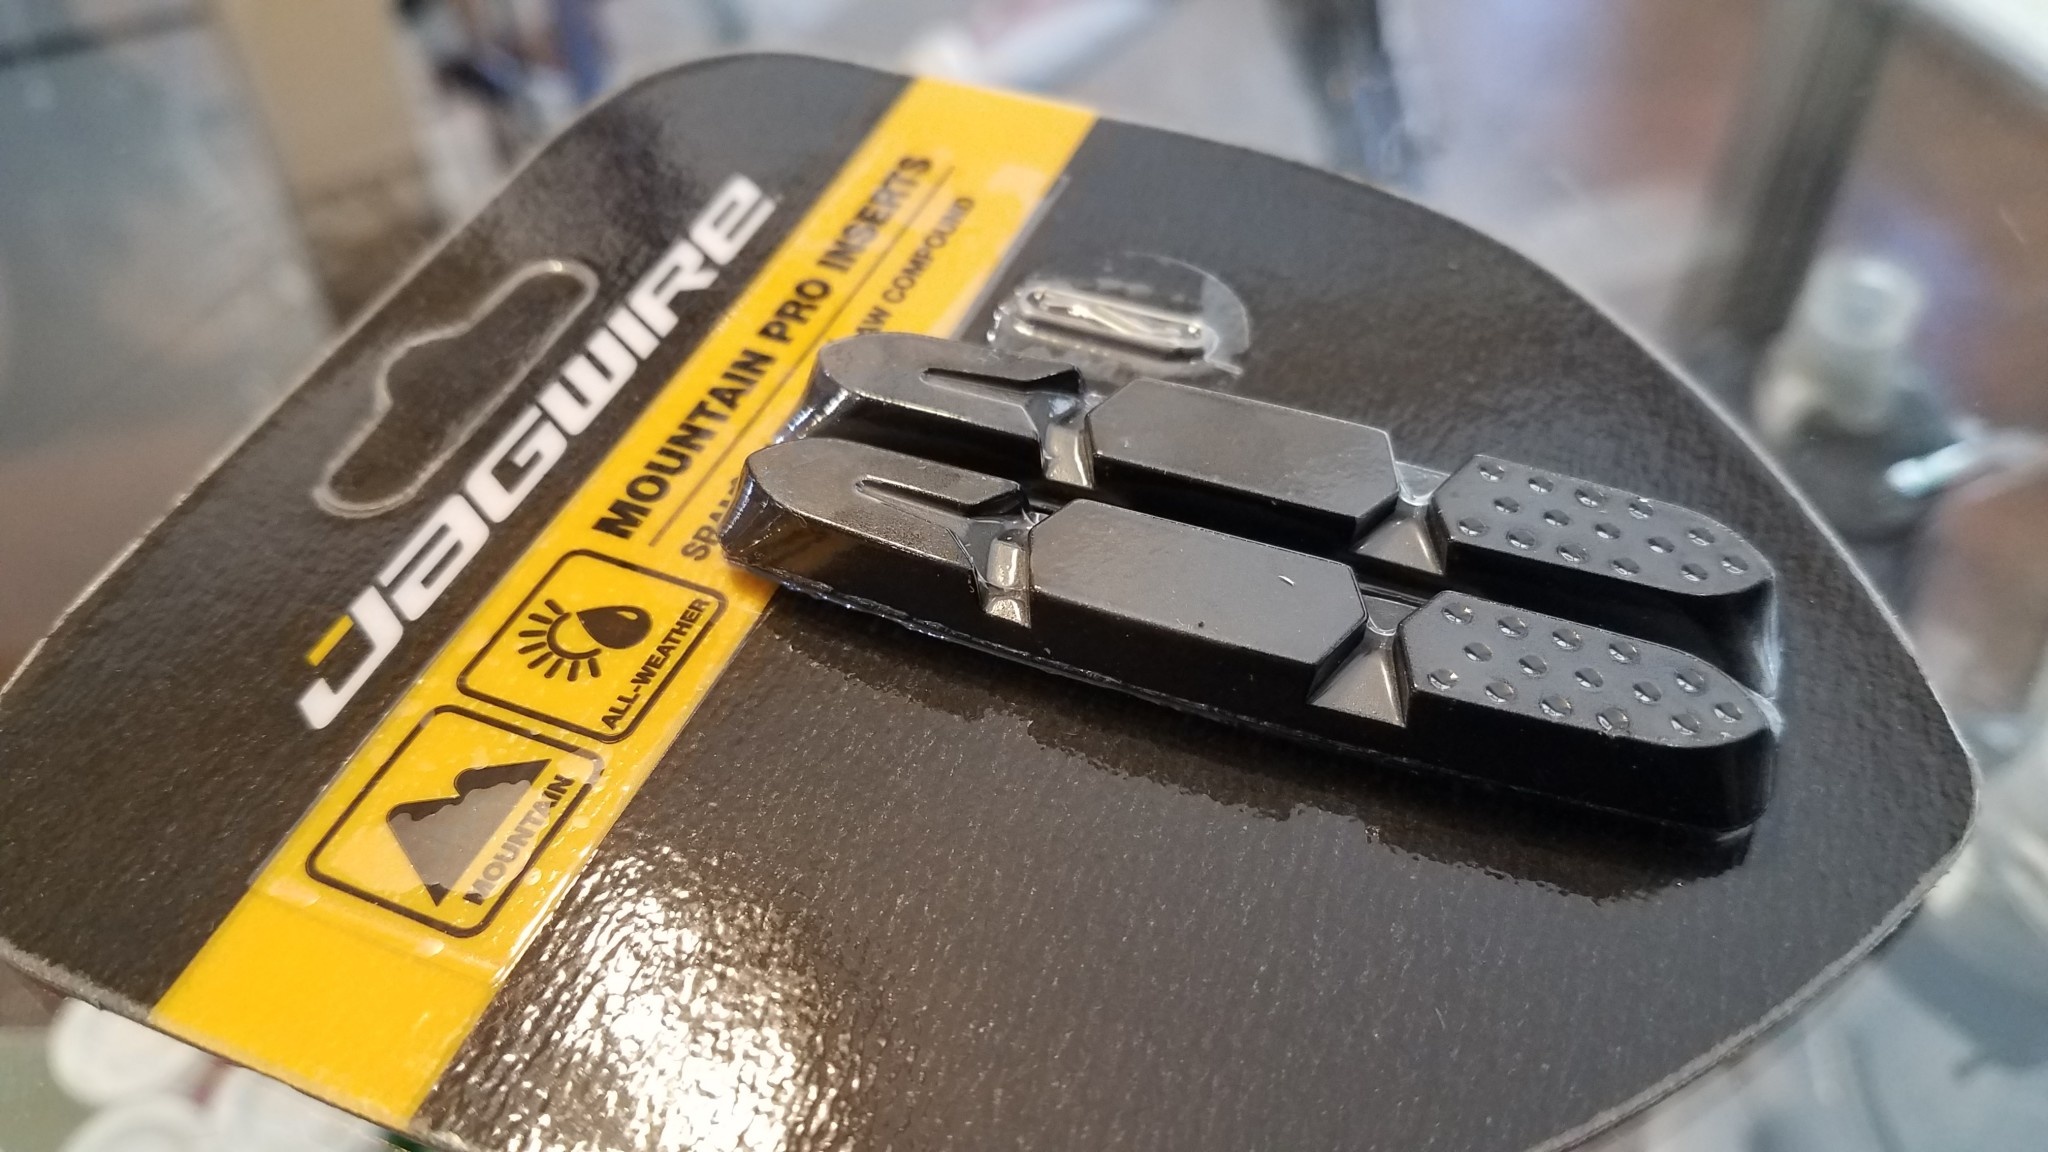 Jagwire Jagwire Mountain Pro Brake Pad Replacement Inserts, Black